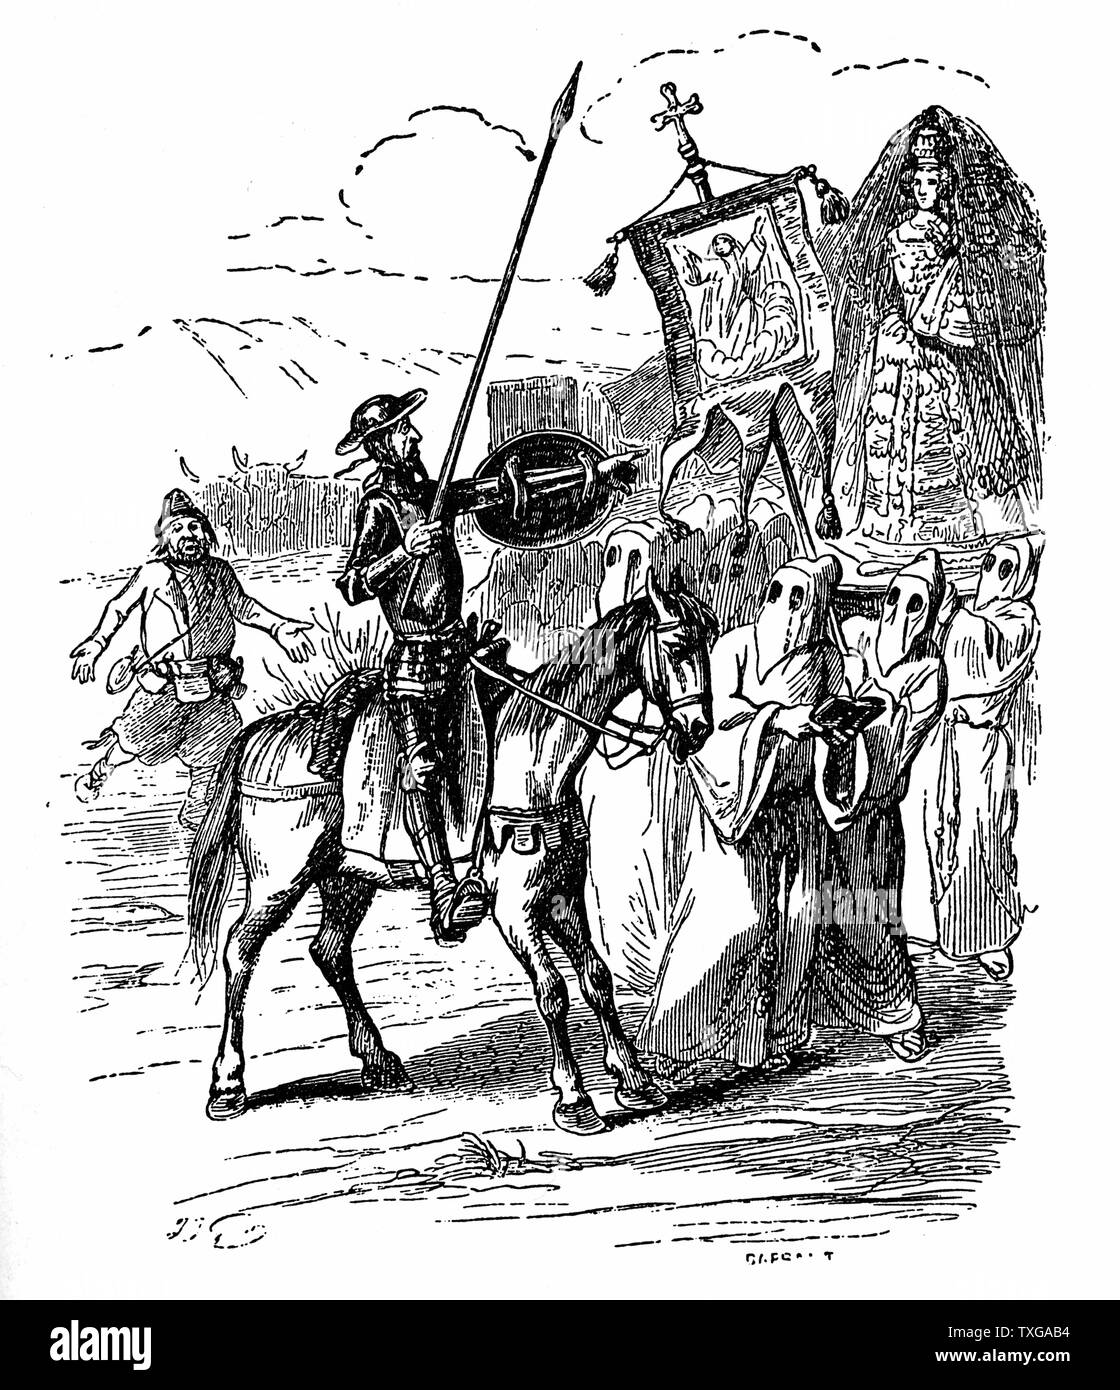 L'espagnol Miguel de Cervantes, romancier, poète et dramaturge. Son Don Quichotte est considéré comme le premier roman moderne. L'illustration montre le chevalier errant, Don Quichotte de la Manche. La procession des pénitents Banque D'Images